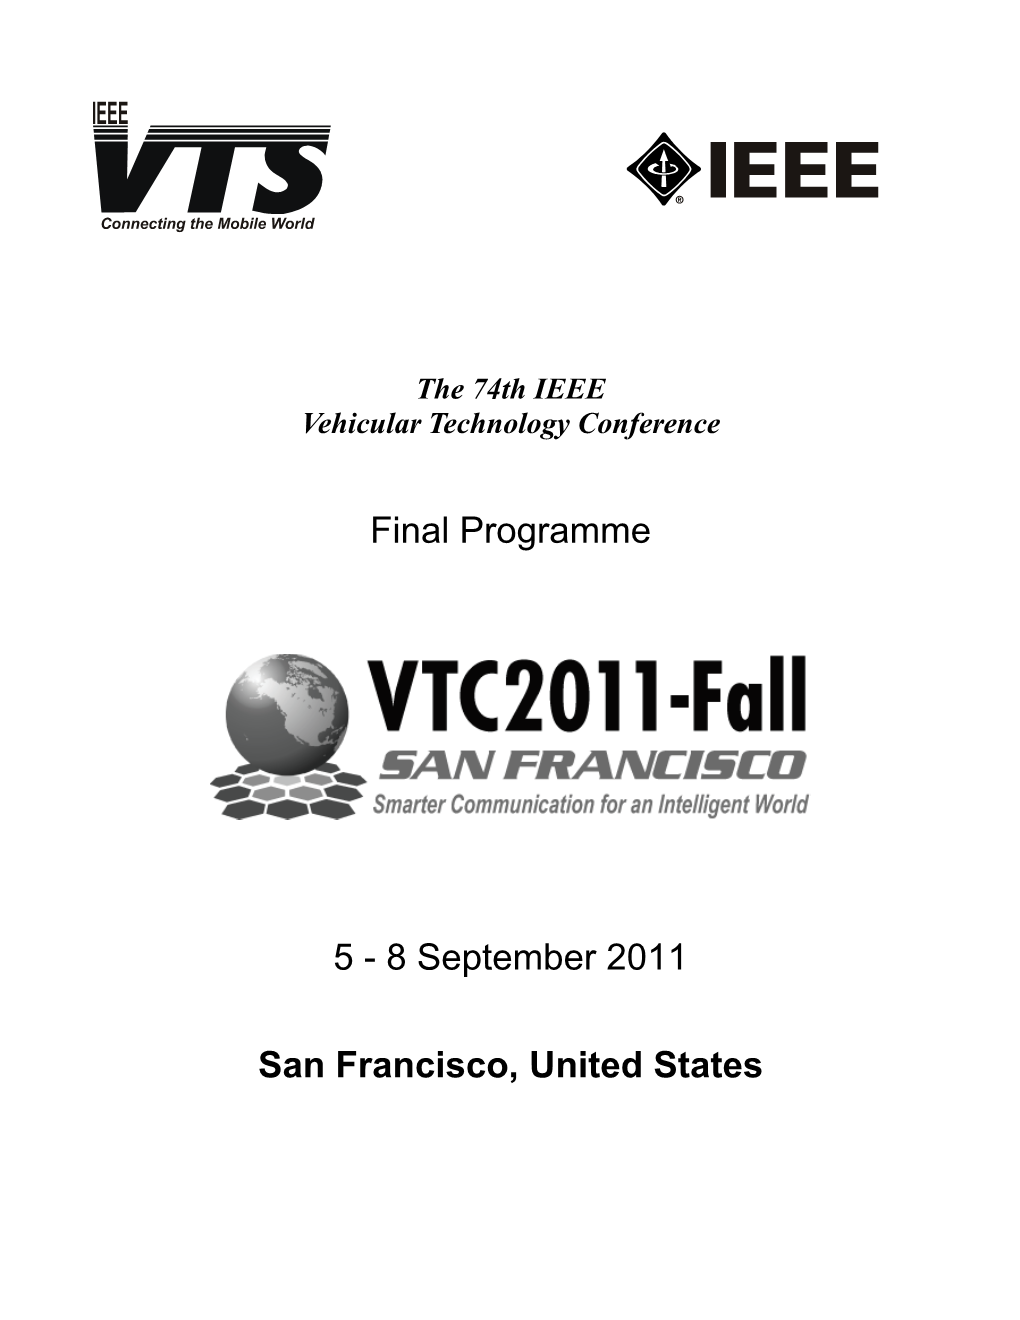 VTC2011-Fall Final Program